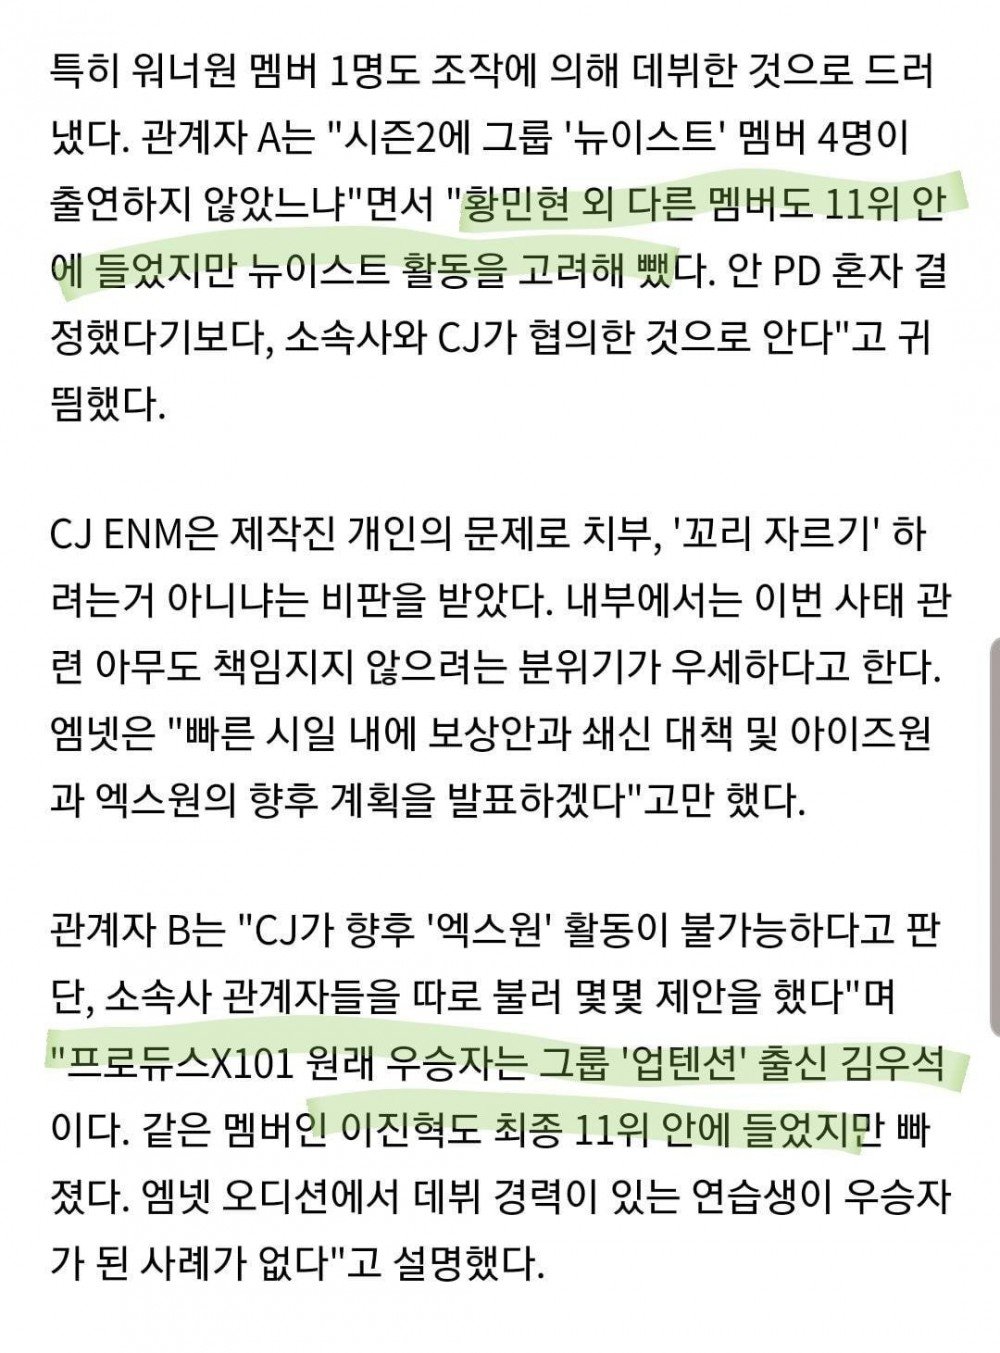 Инсайдеры назвали участников Produce 101, которые пострадали из-за подтасовки голосов на шоу